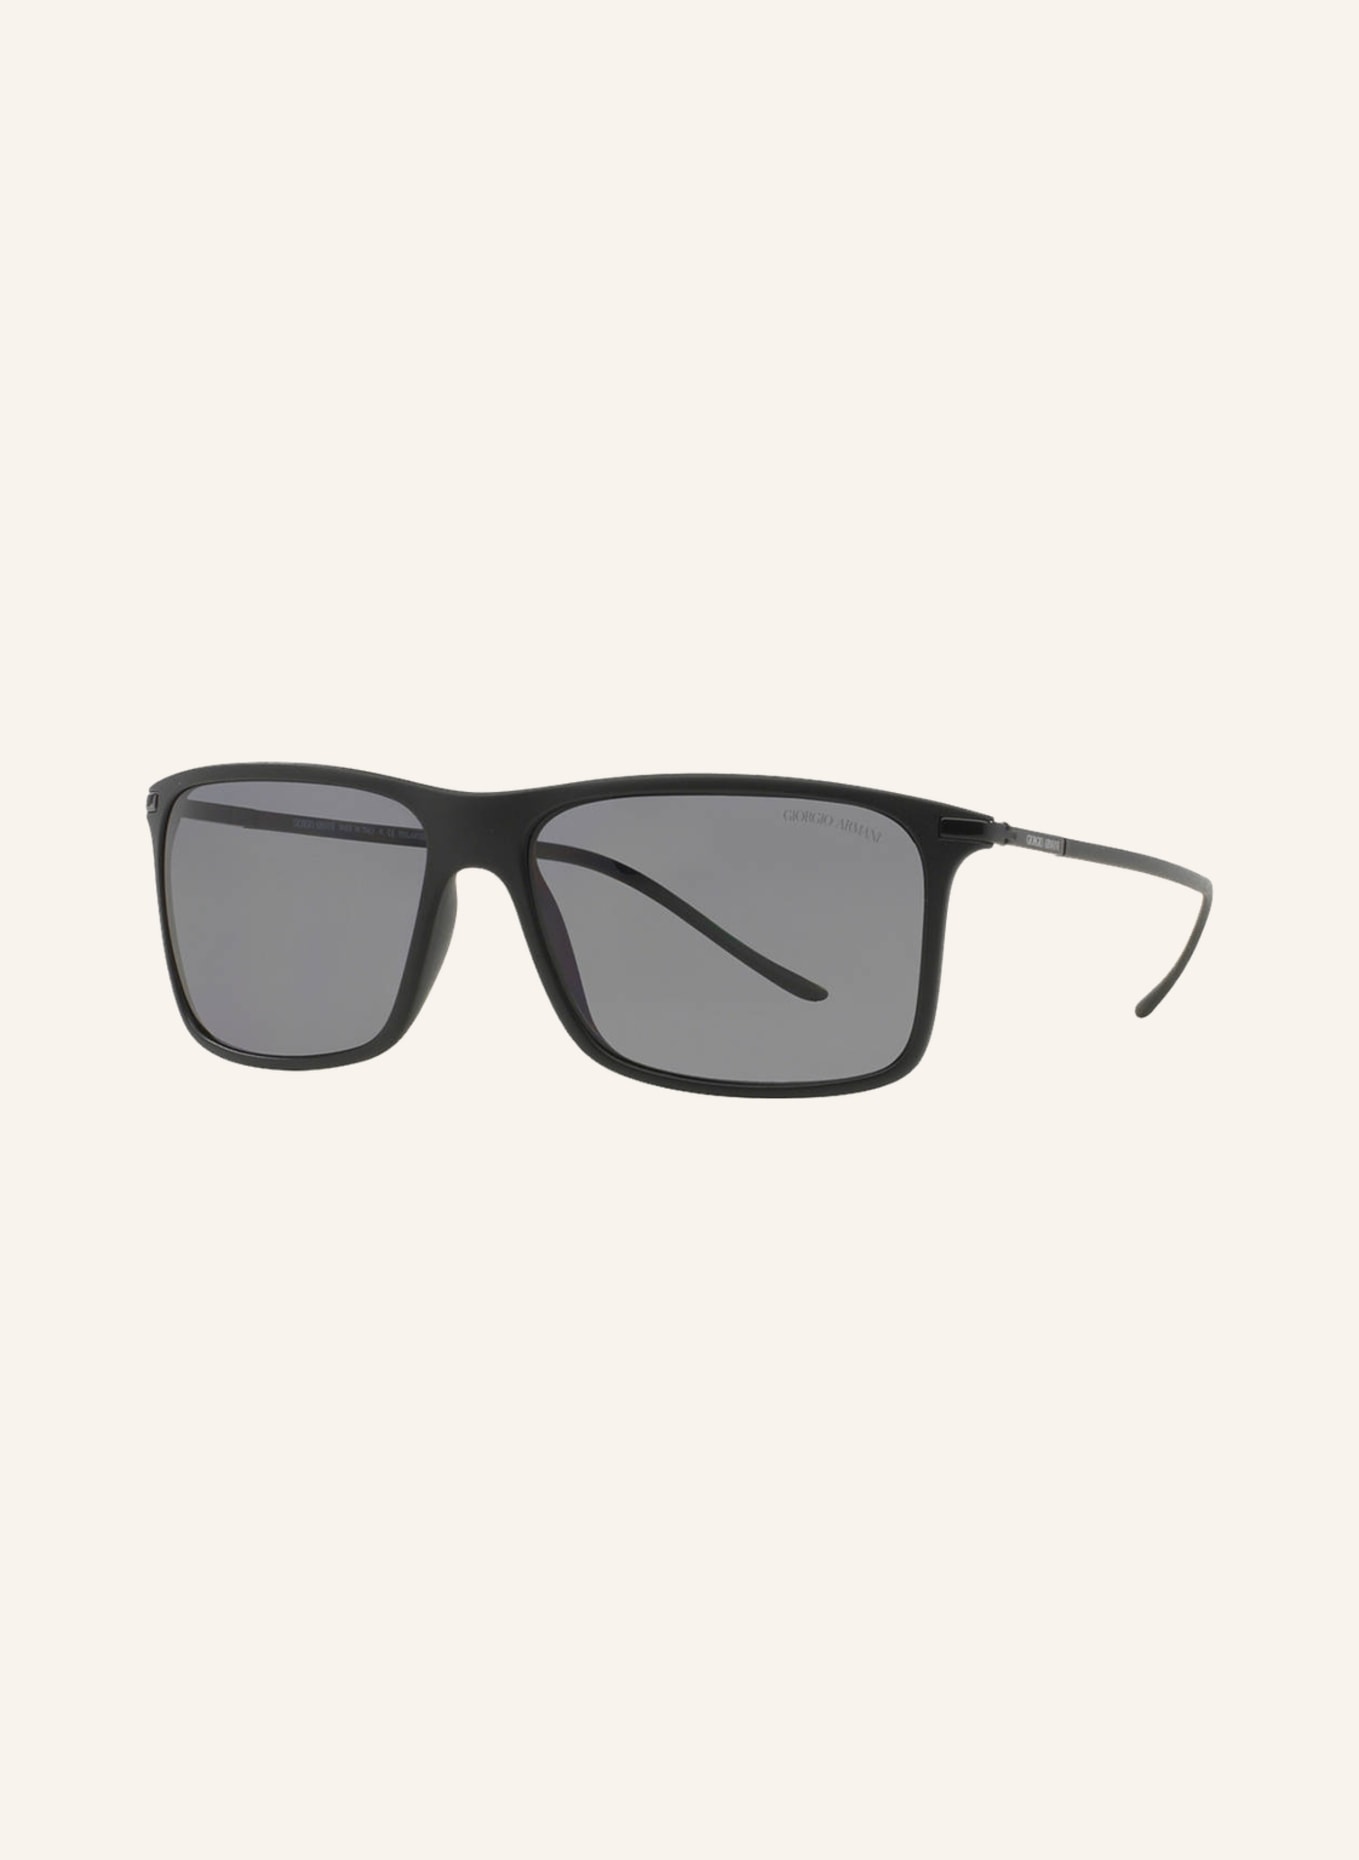 EMPORIO ARMANI Sunglasses AR8034, Color: 504281 - MATTE BLACK/GRAY POLARIZED (Image 1)